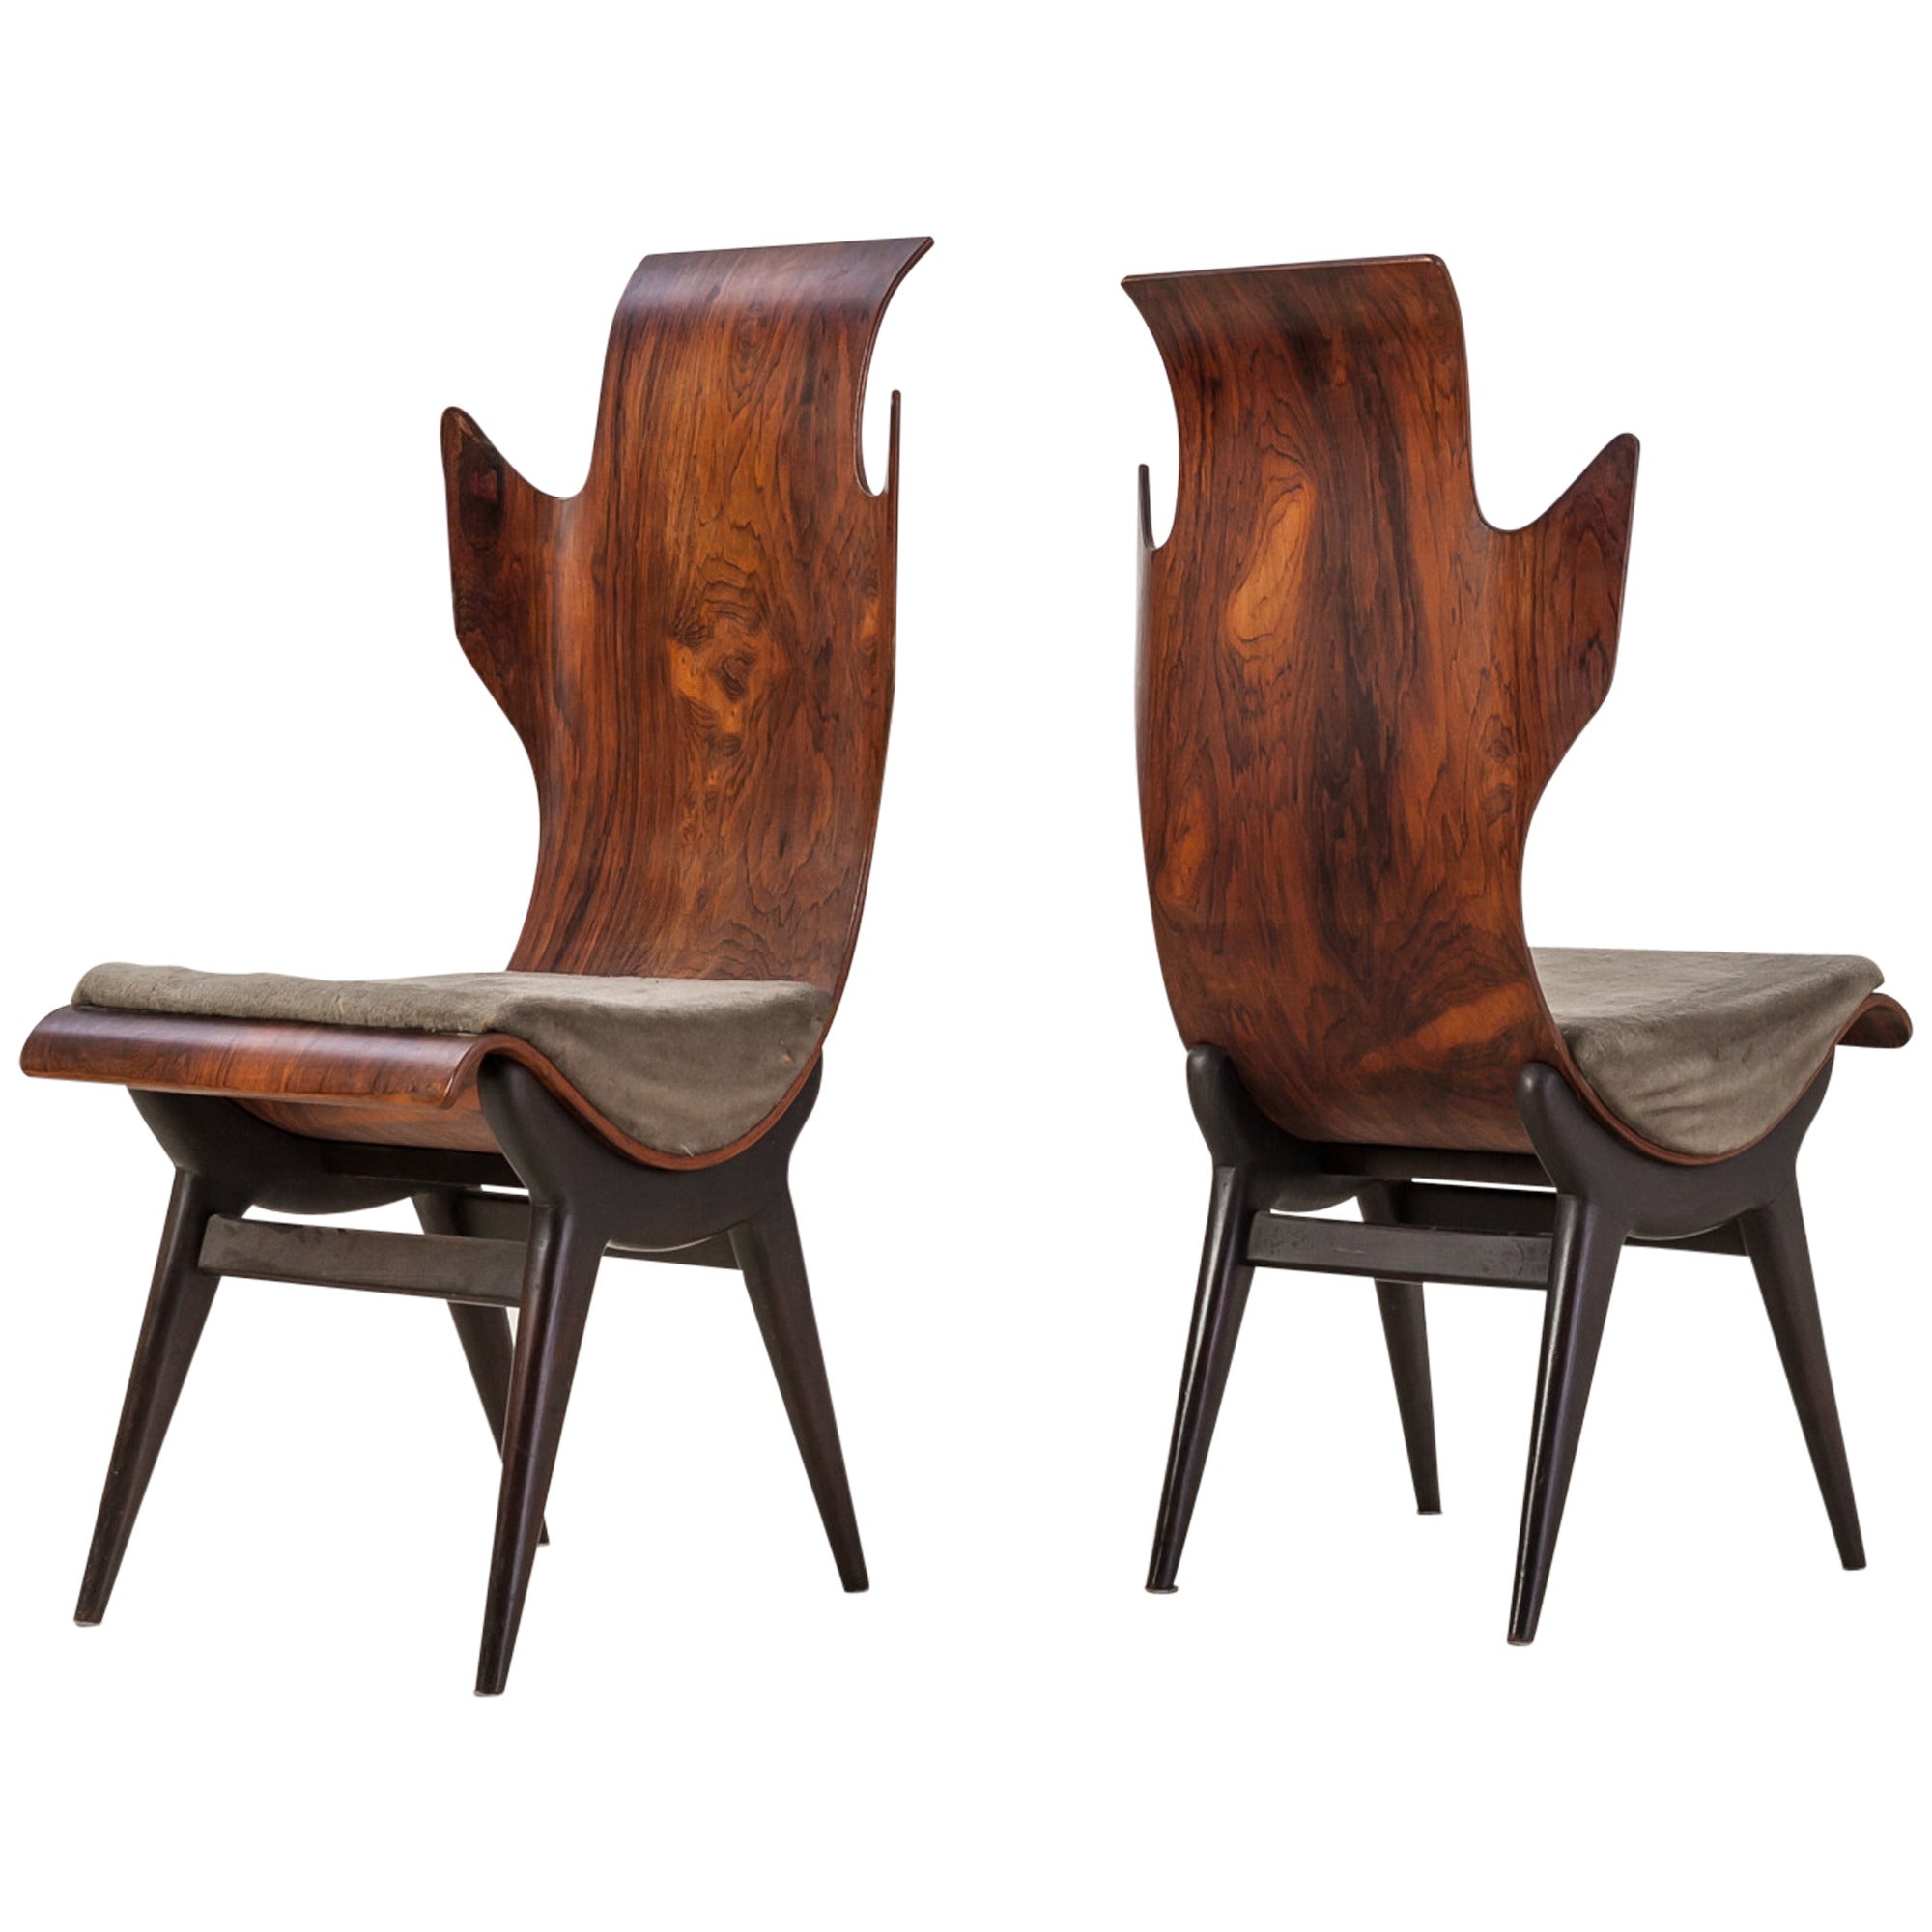 Dante Latorre Rare Pair of Chairs for Pozzi e Verga. Italian, 1960s For Sale